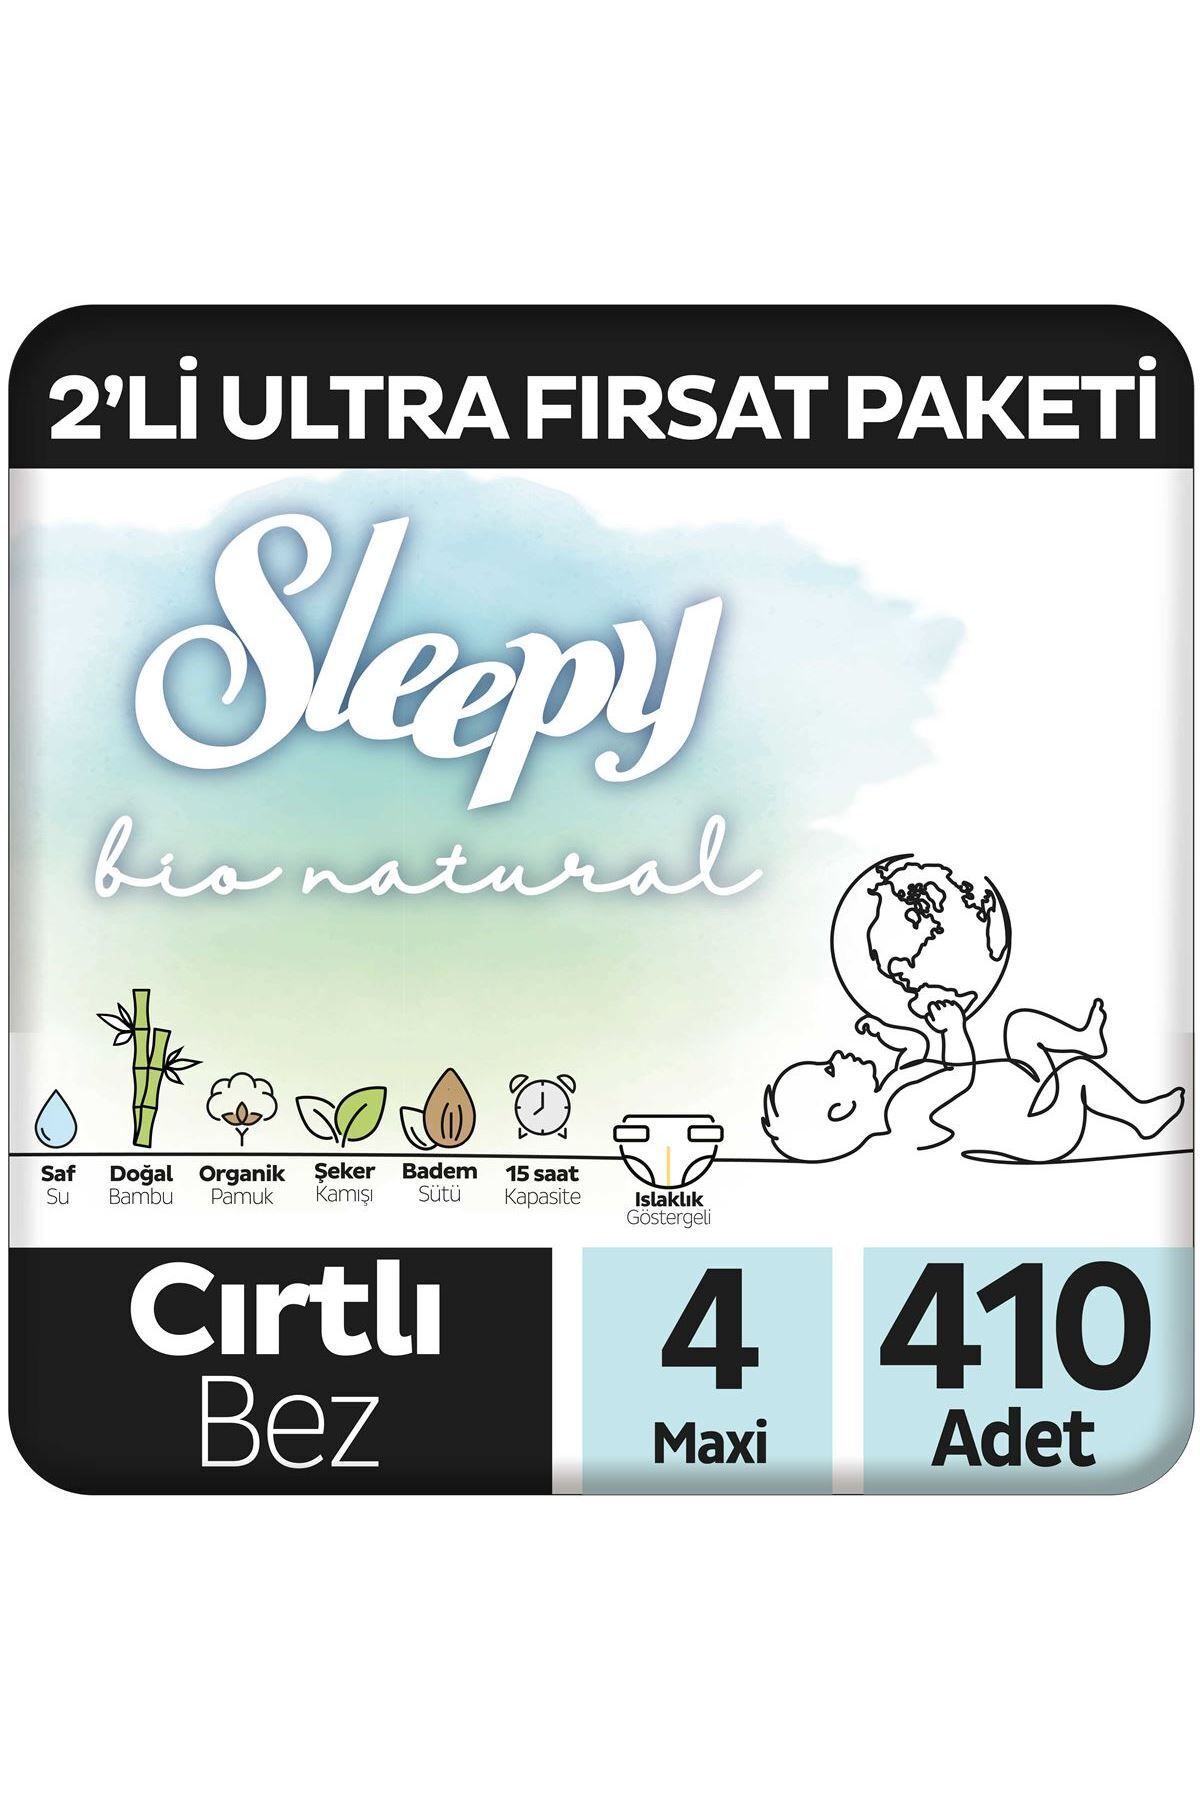 Sleepy Bio Natural 2'Li Ultra Fırsat Paketi Bebek Bezi 4 Numara Maxi 410 Adet